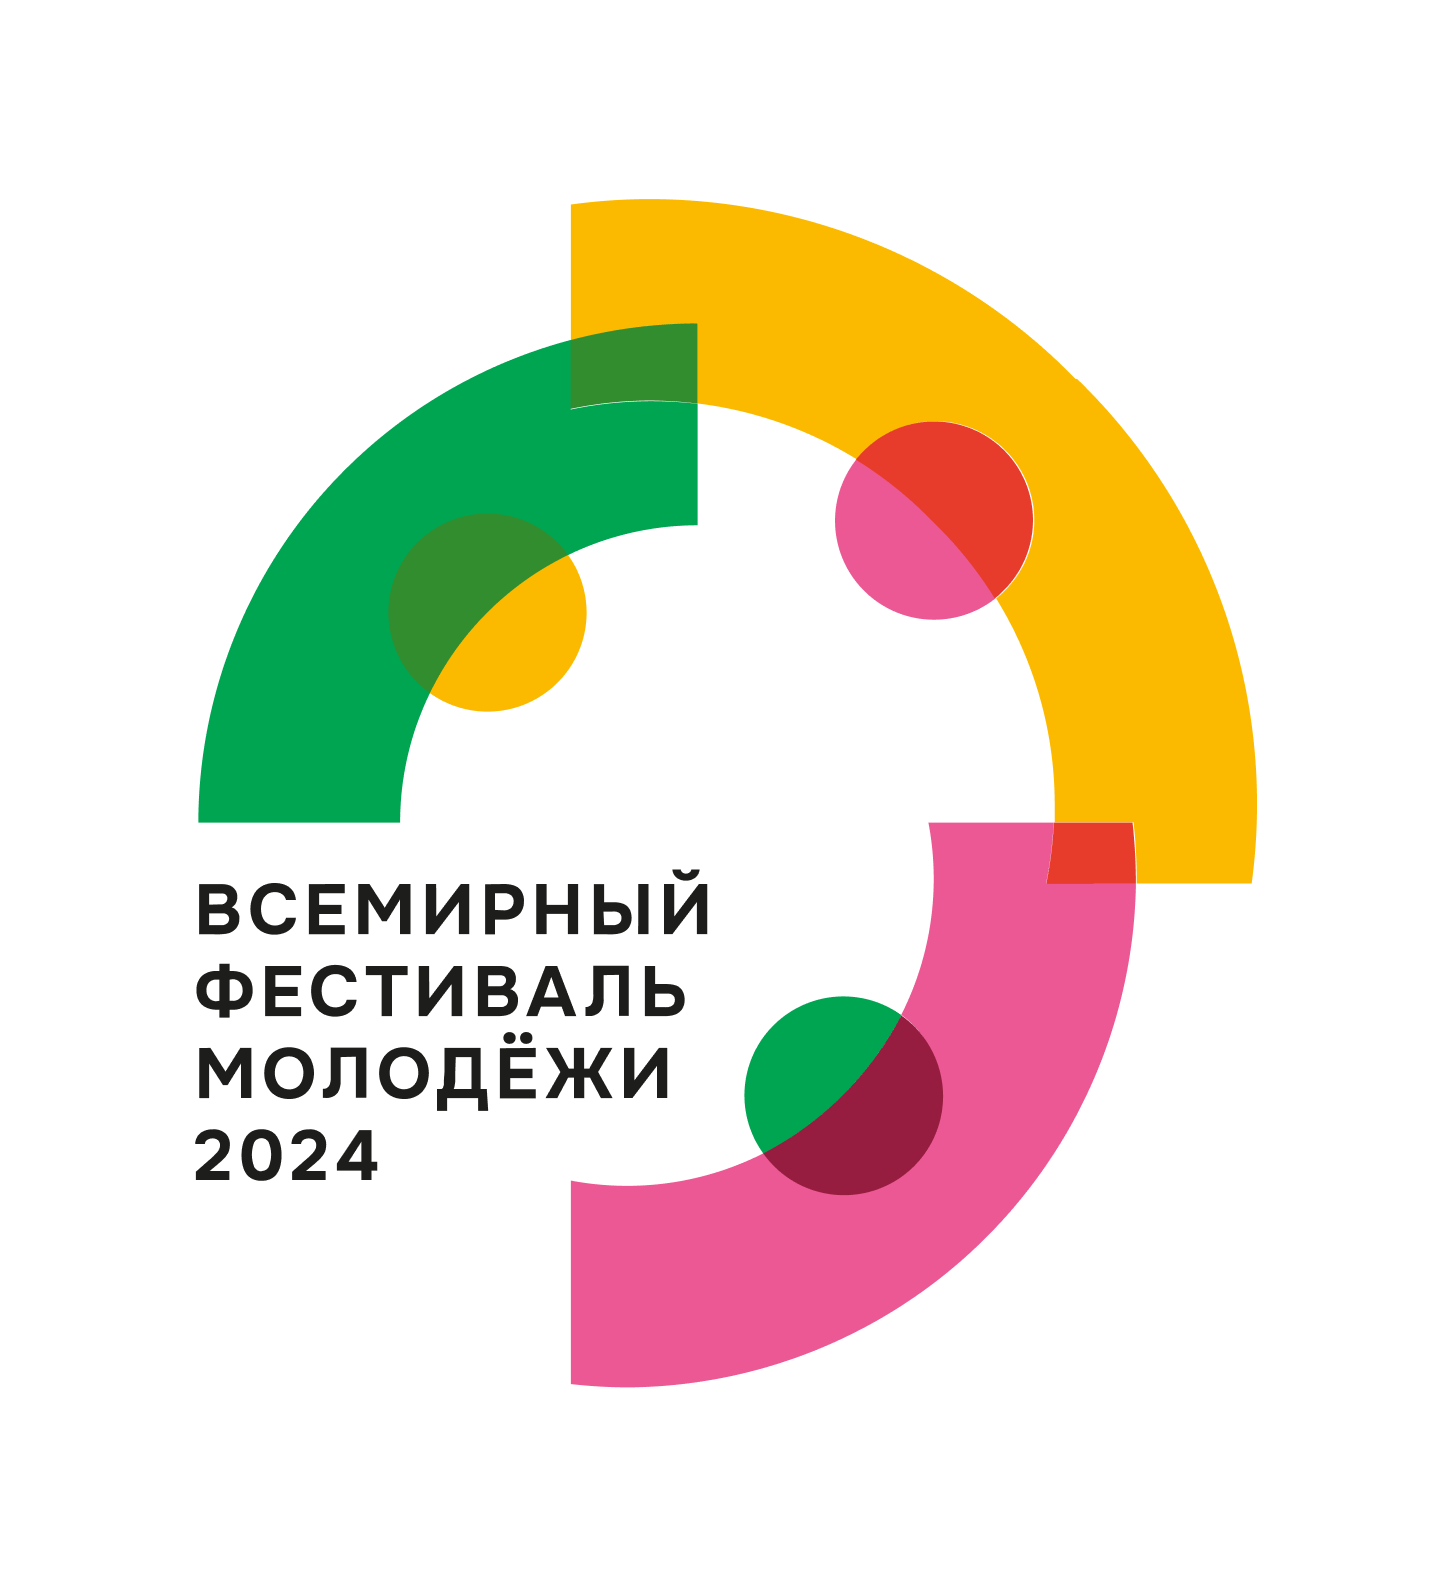 Всемирный фестиваль молодежи 2024 года